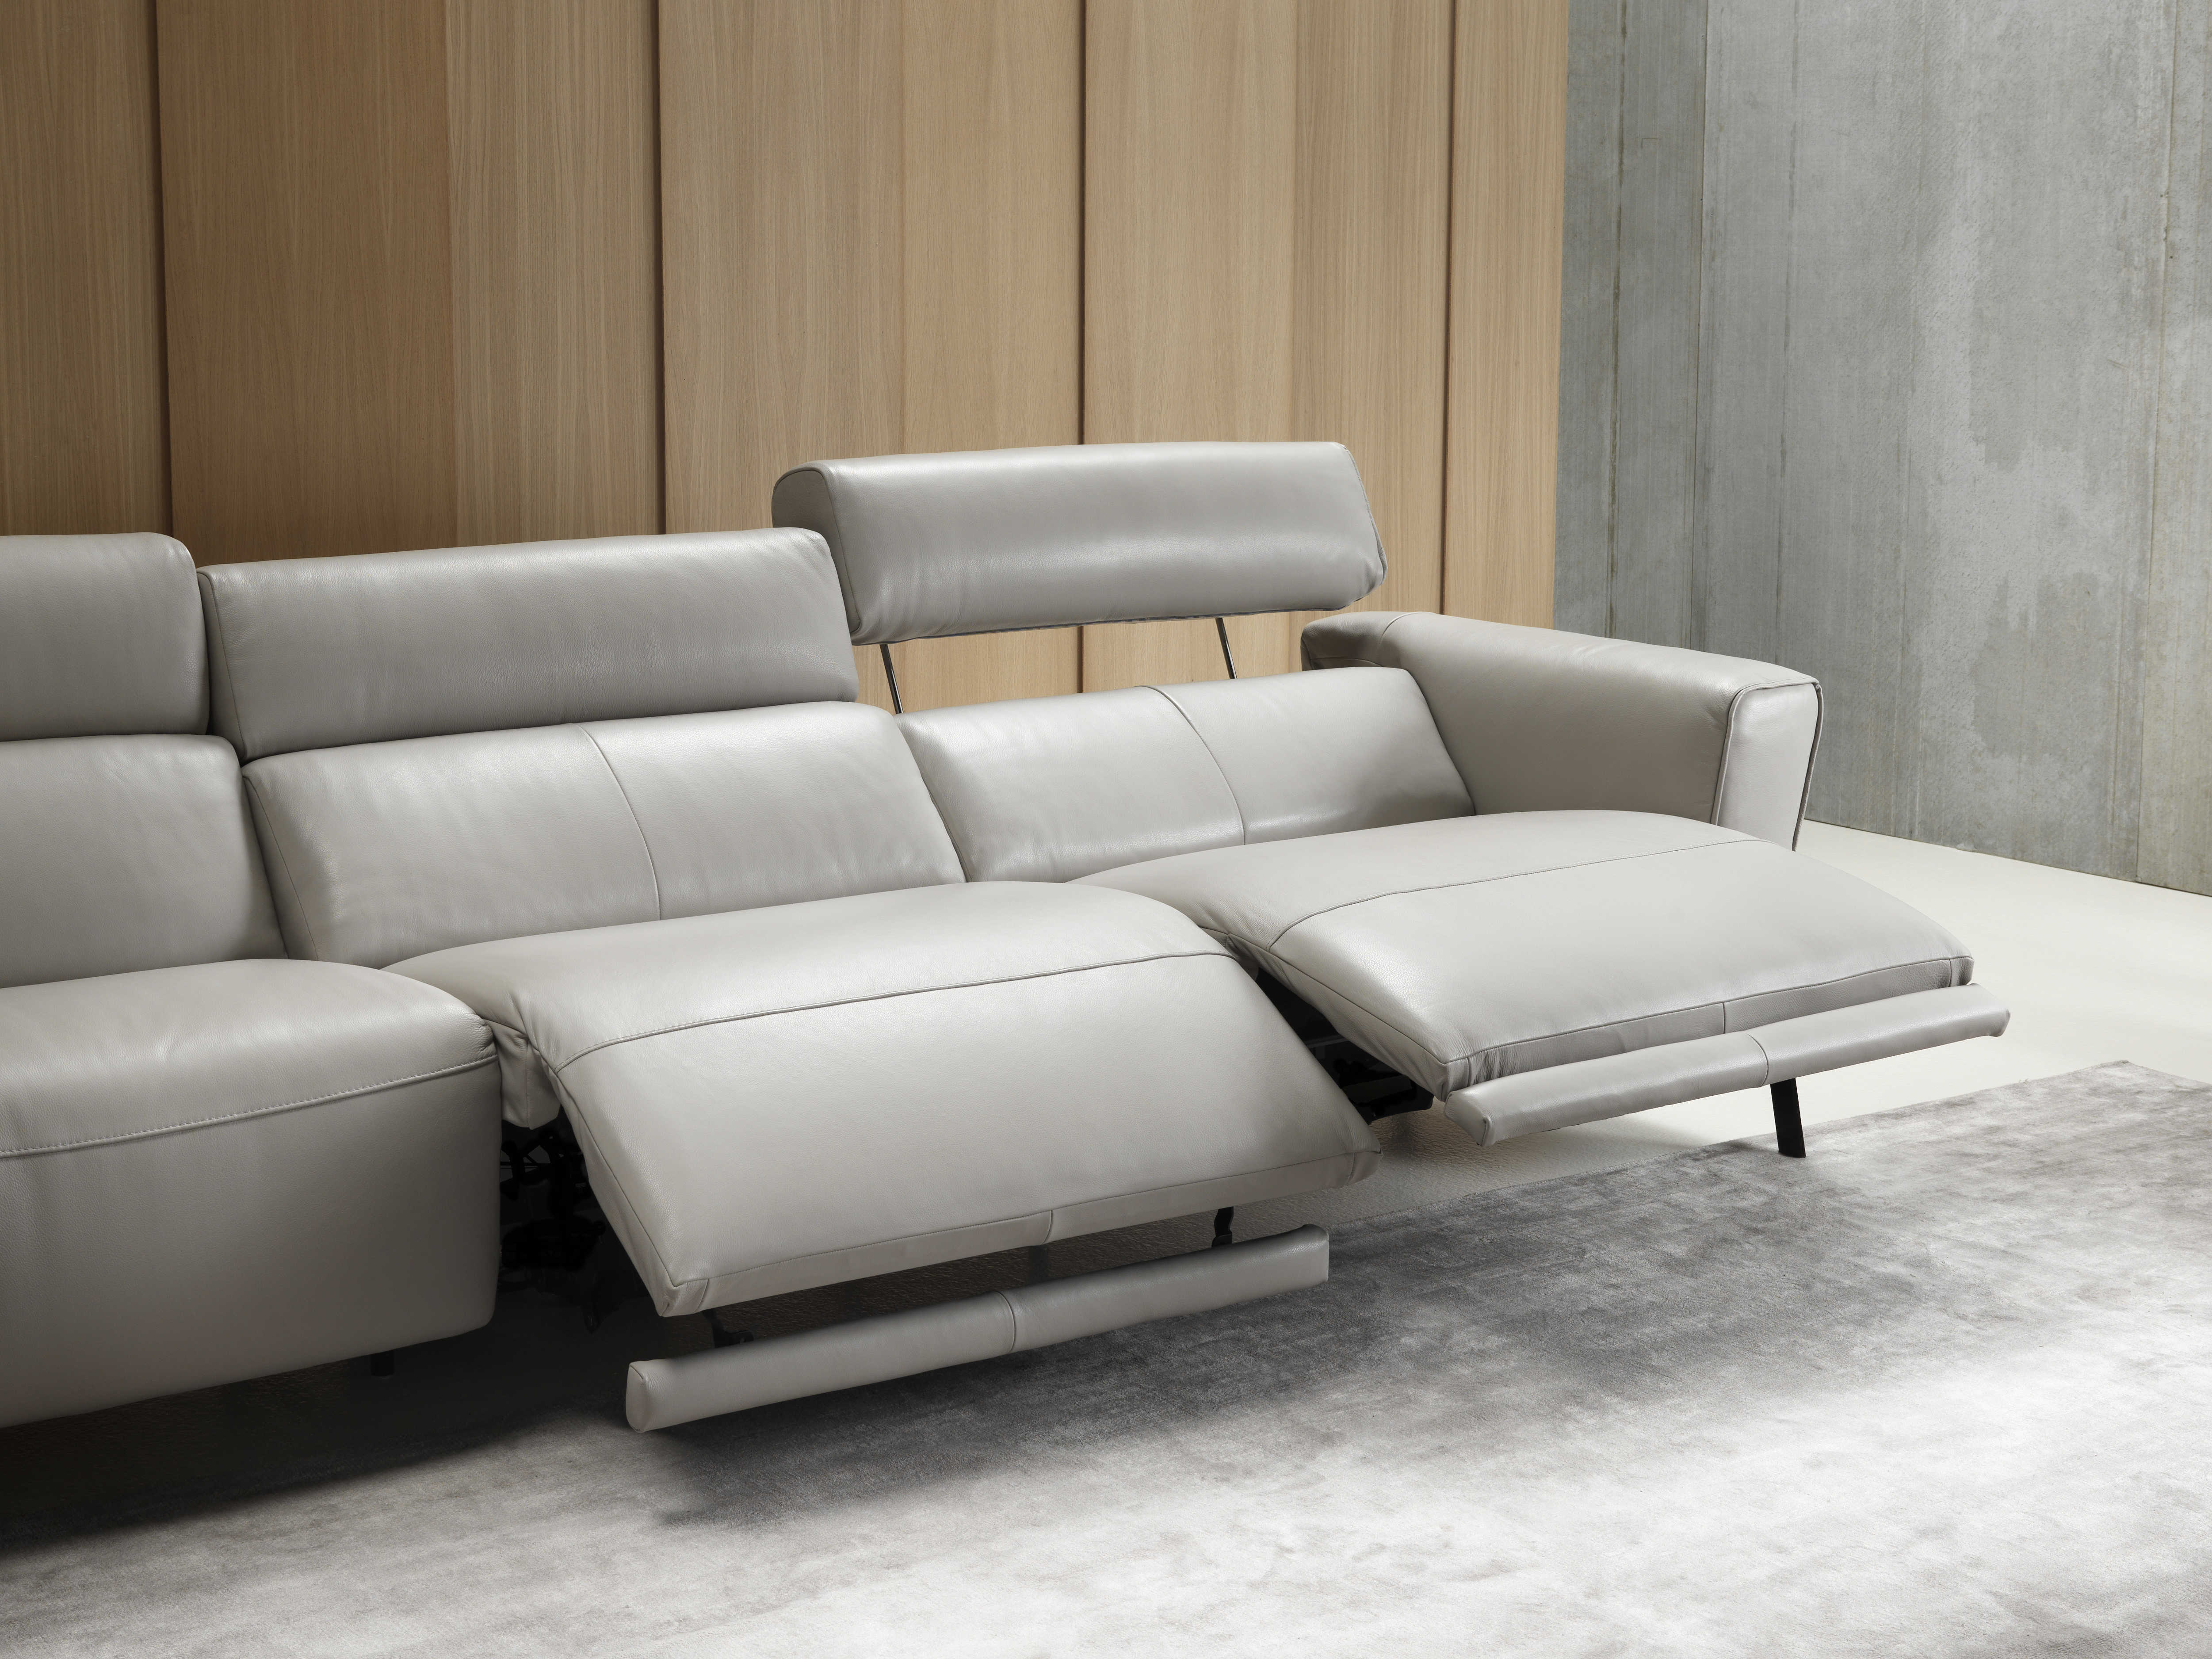 natuzzi leather sectional sofa canada